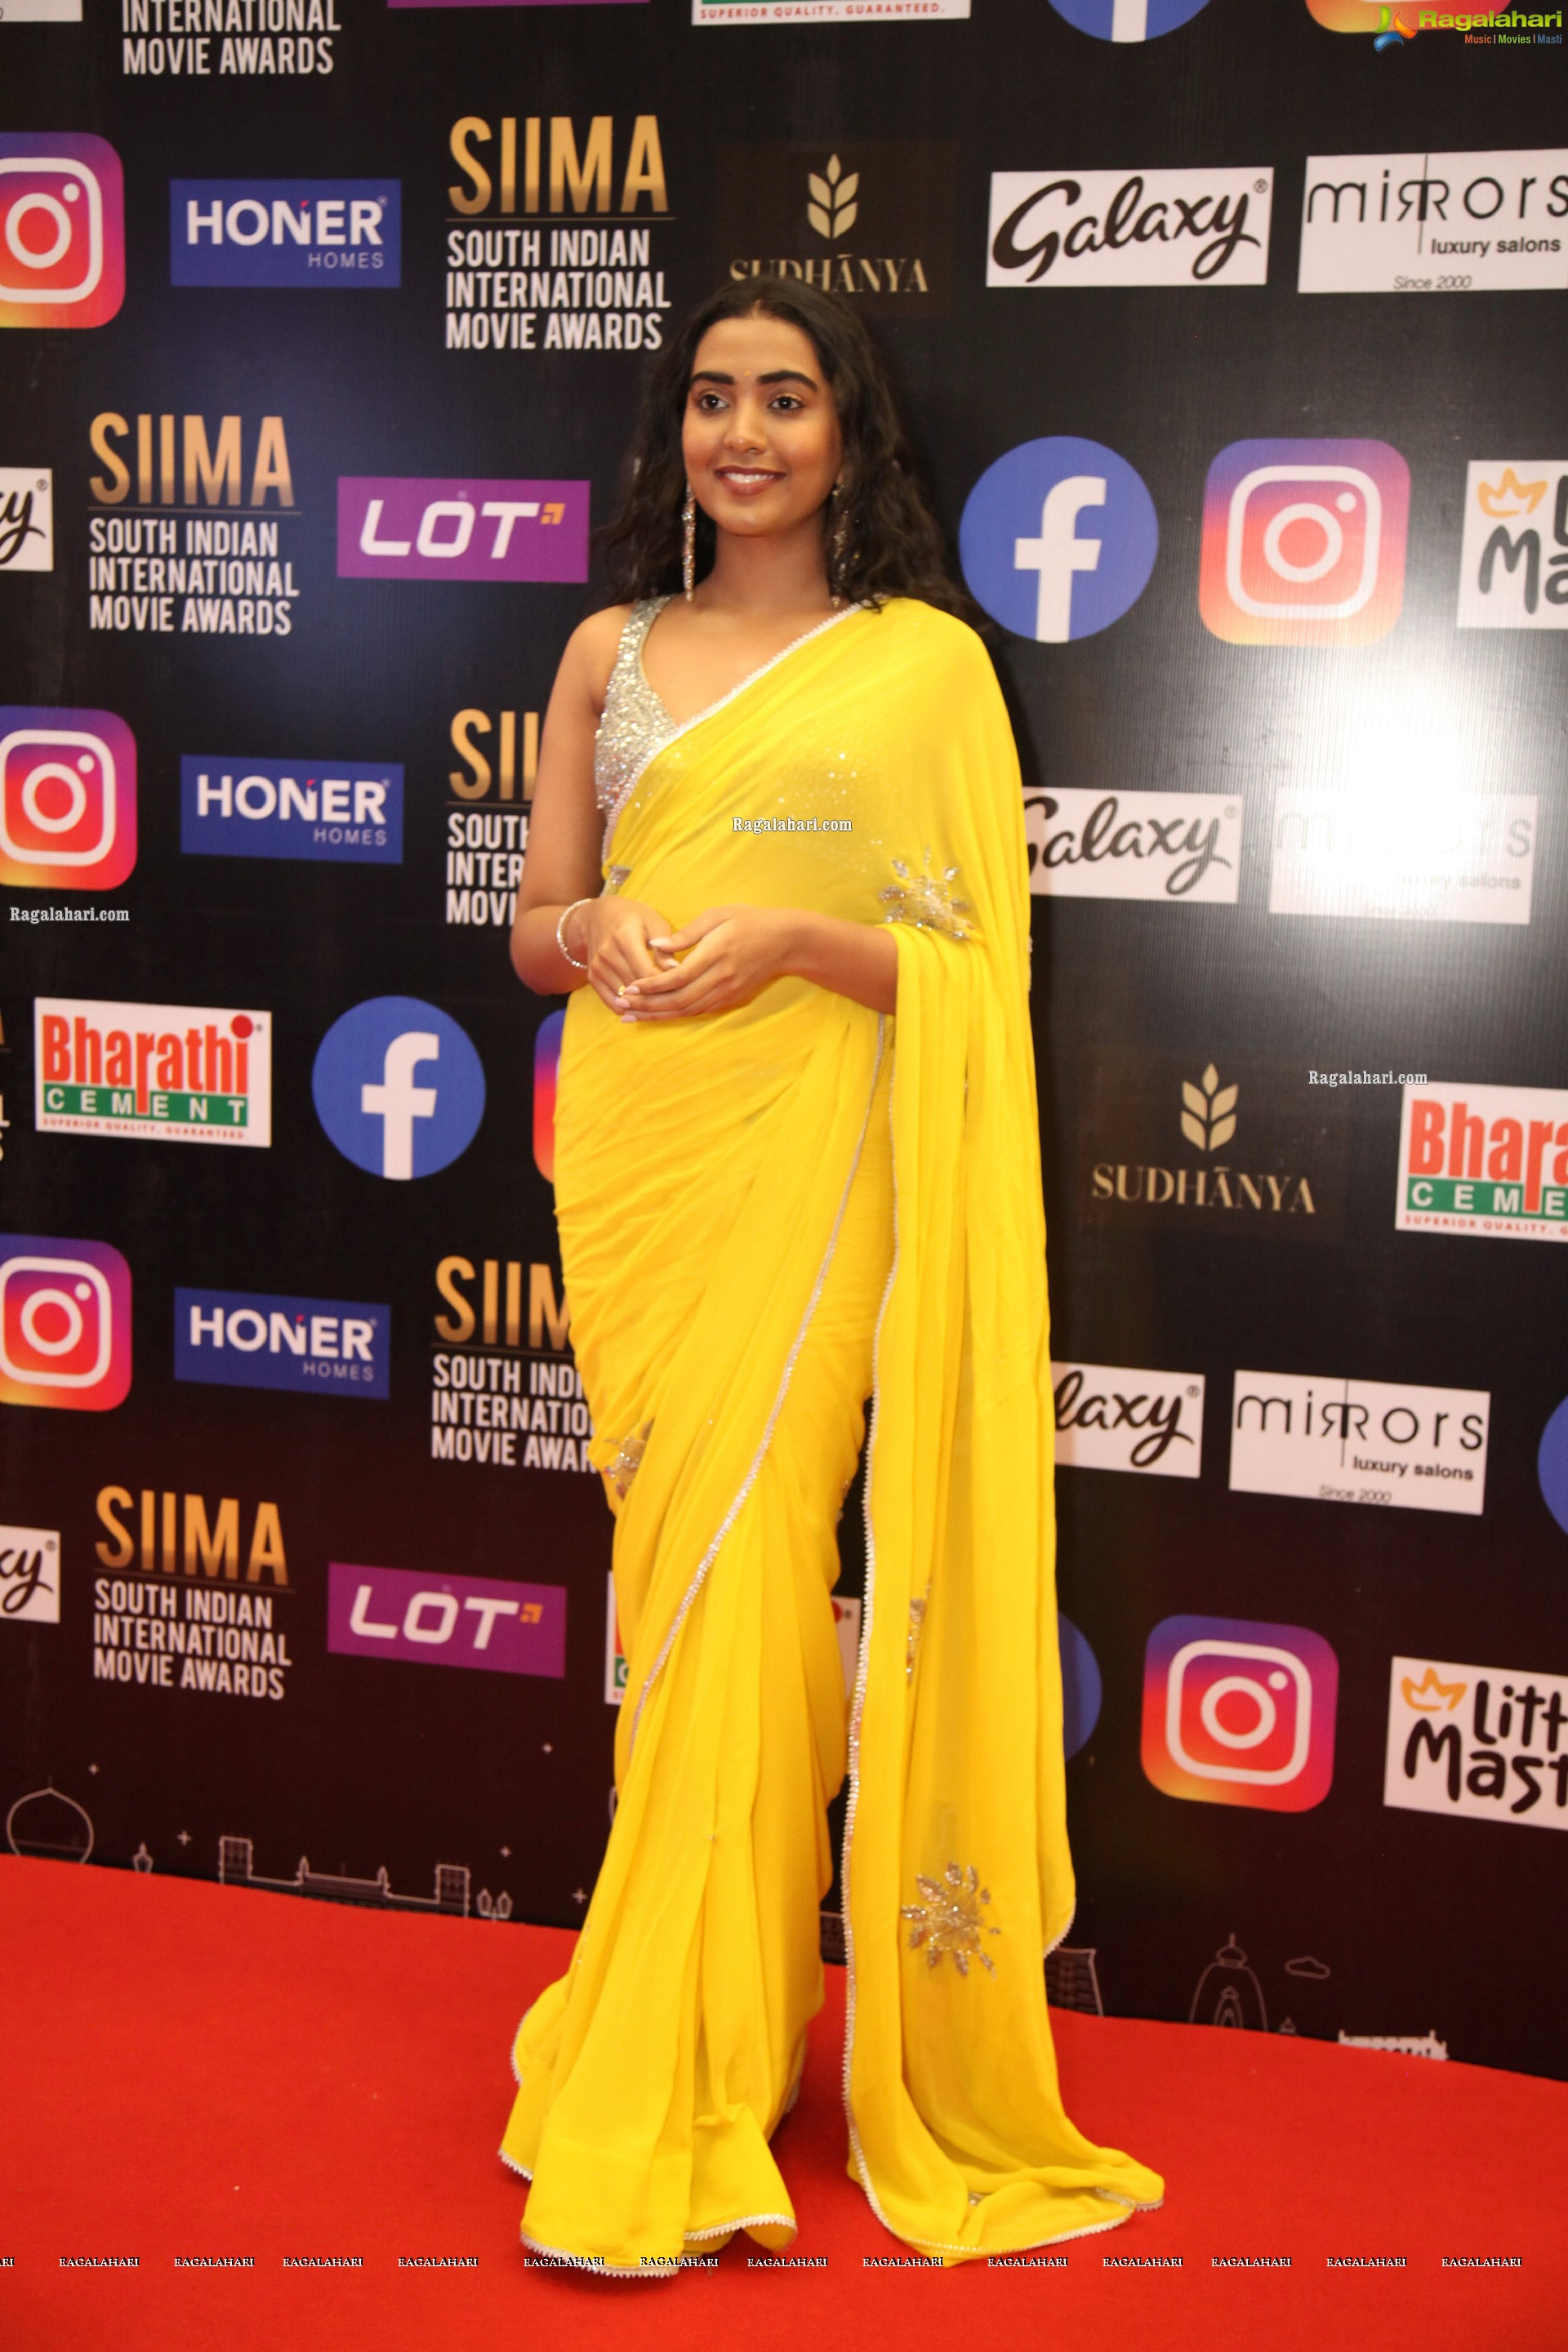 Shivatmika Rajasekhar At SIIMA Awards 2021, HD Photo Gallery